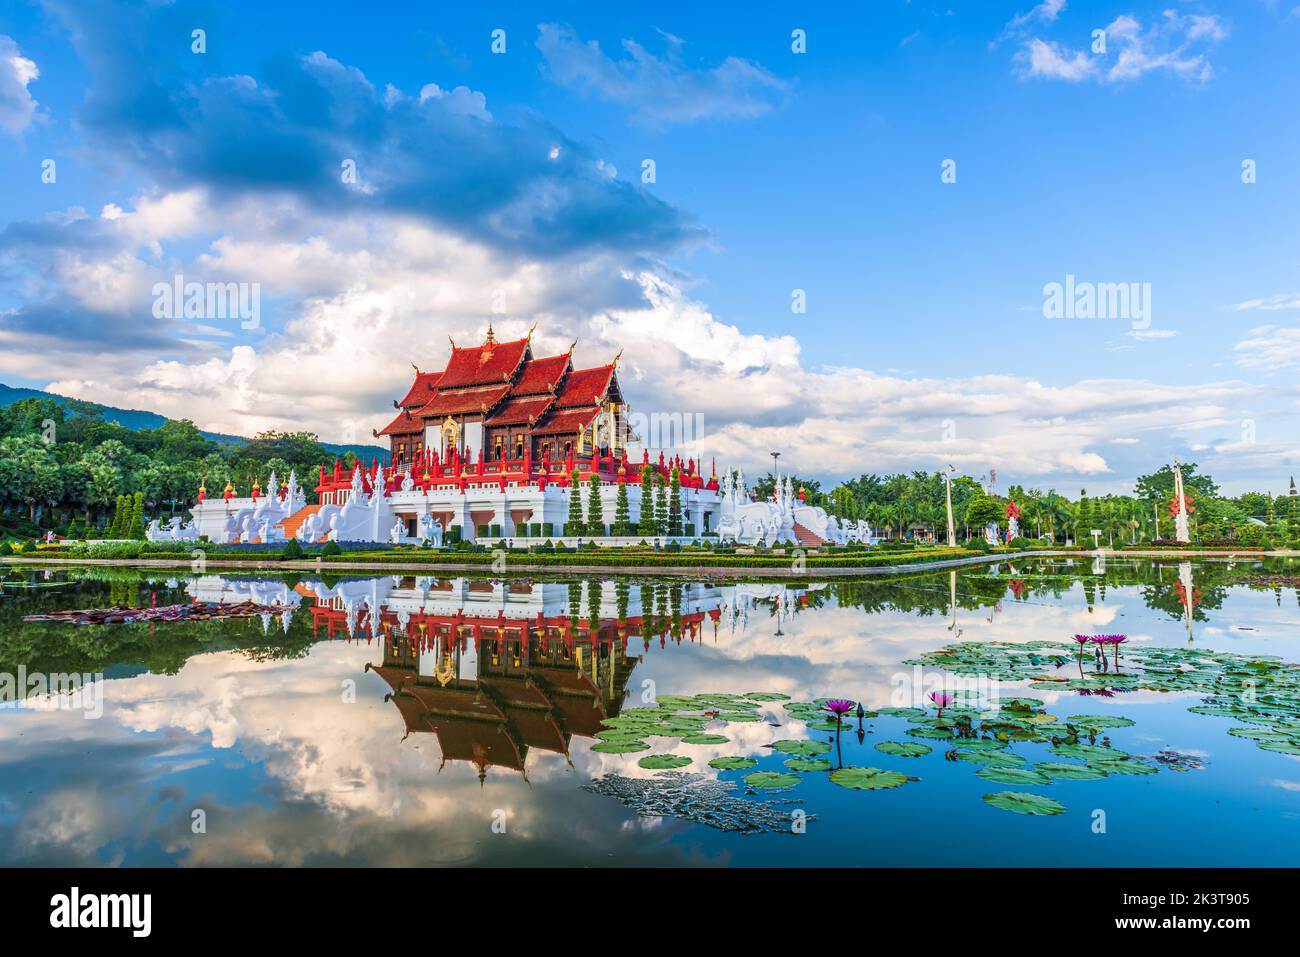 Chiang Mai, Thailand at Royal Flora Ratchaphruek Park Stock Photo